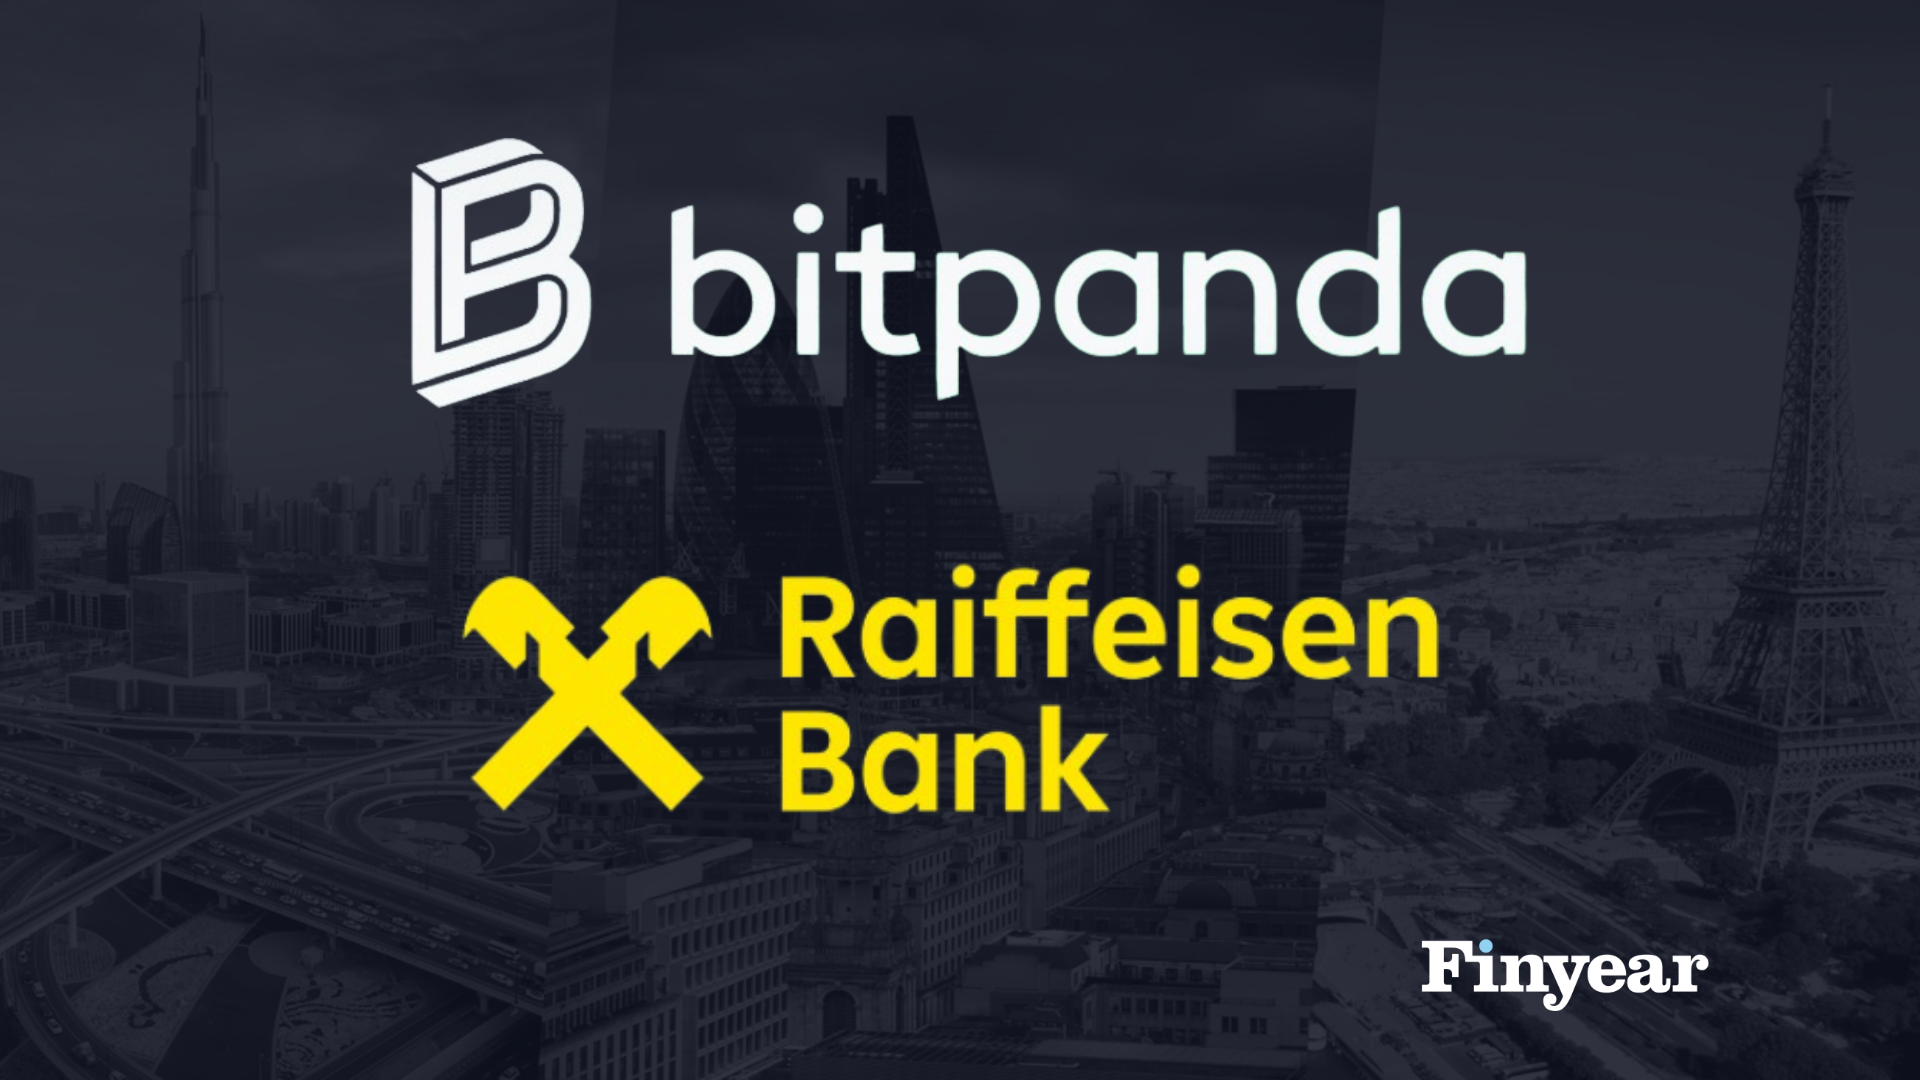 Bitpanda étend son partenariat avec la banque Raiffeisen